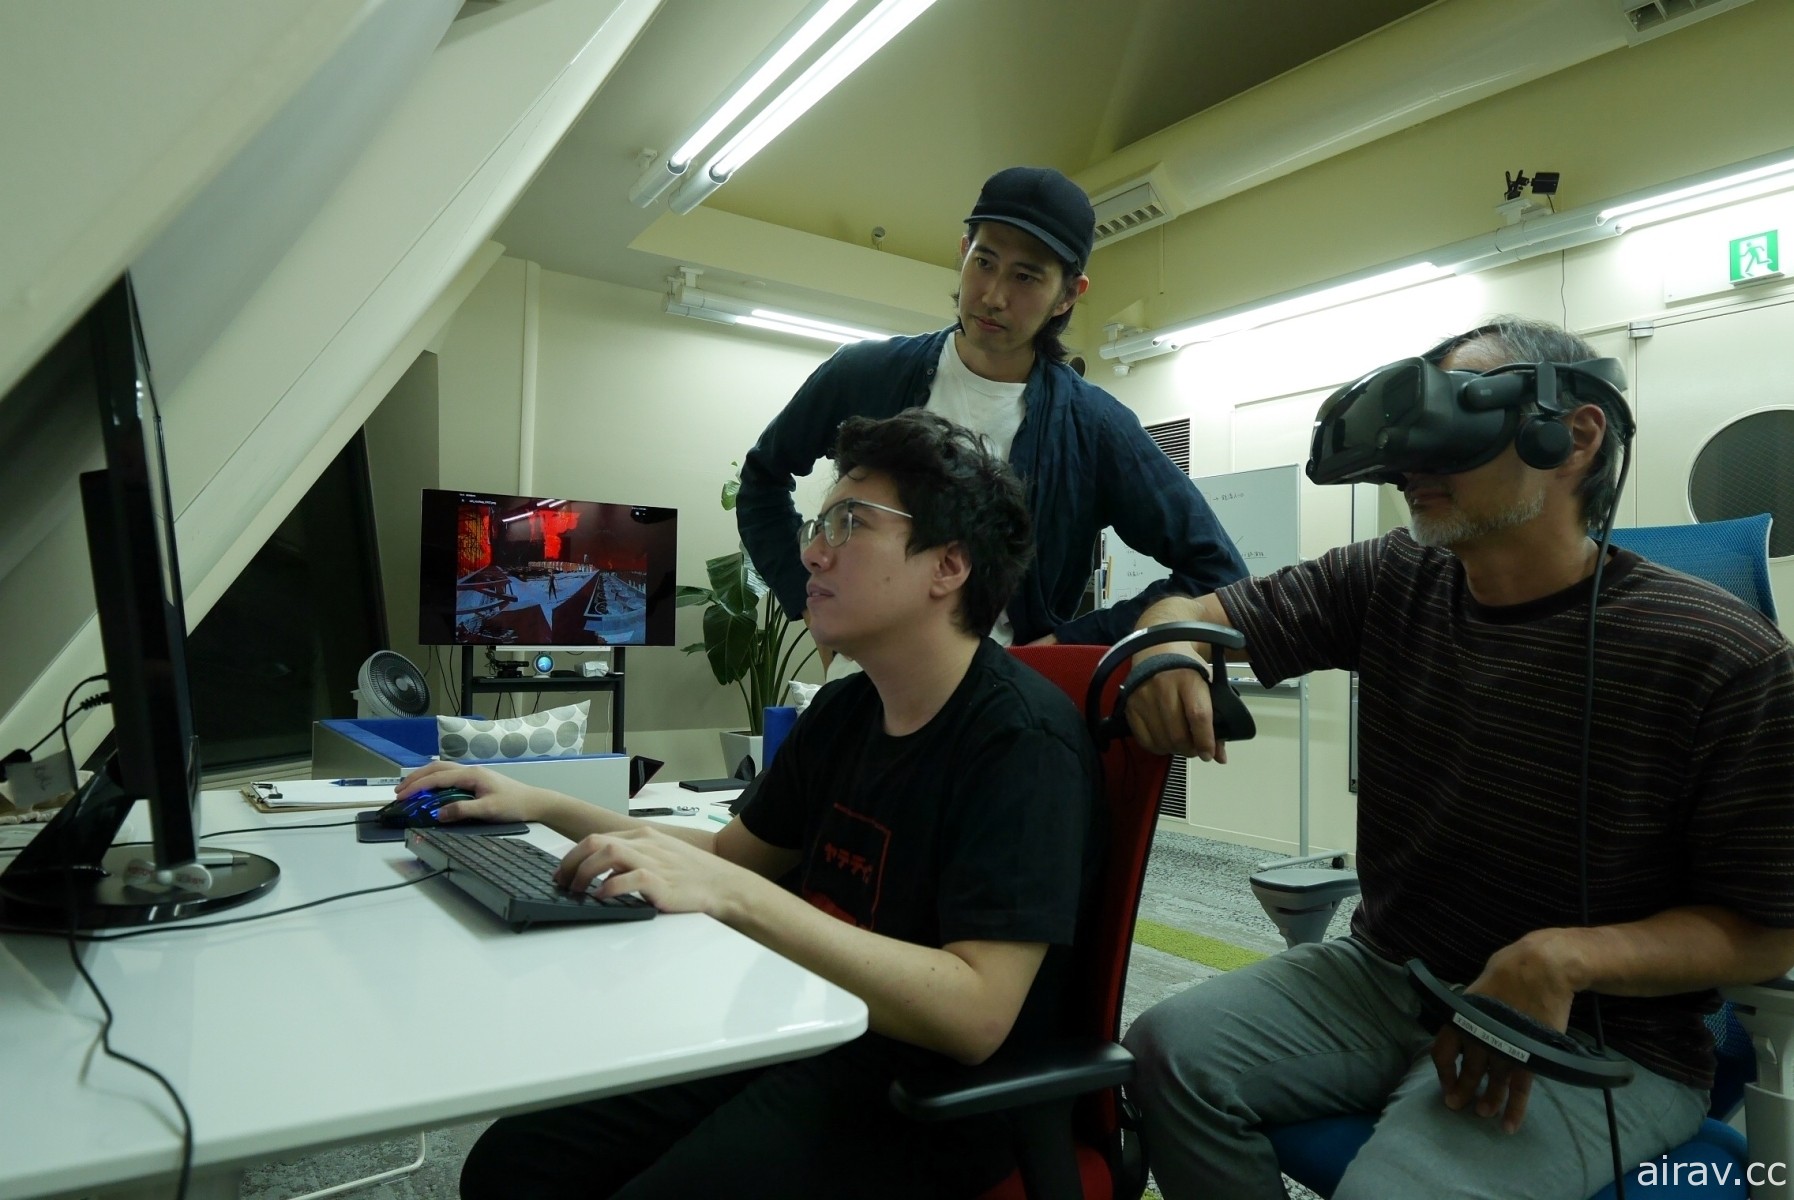 日本講談社 VR 作品《末日之舞》專訪 藉由新興媒介探究未來敘事模式